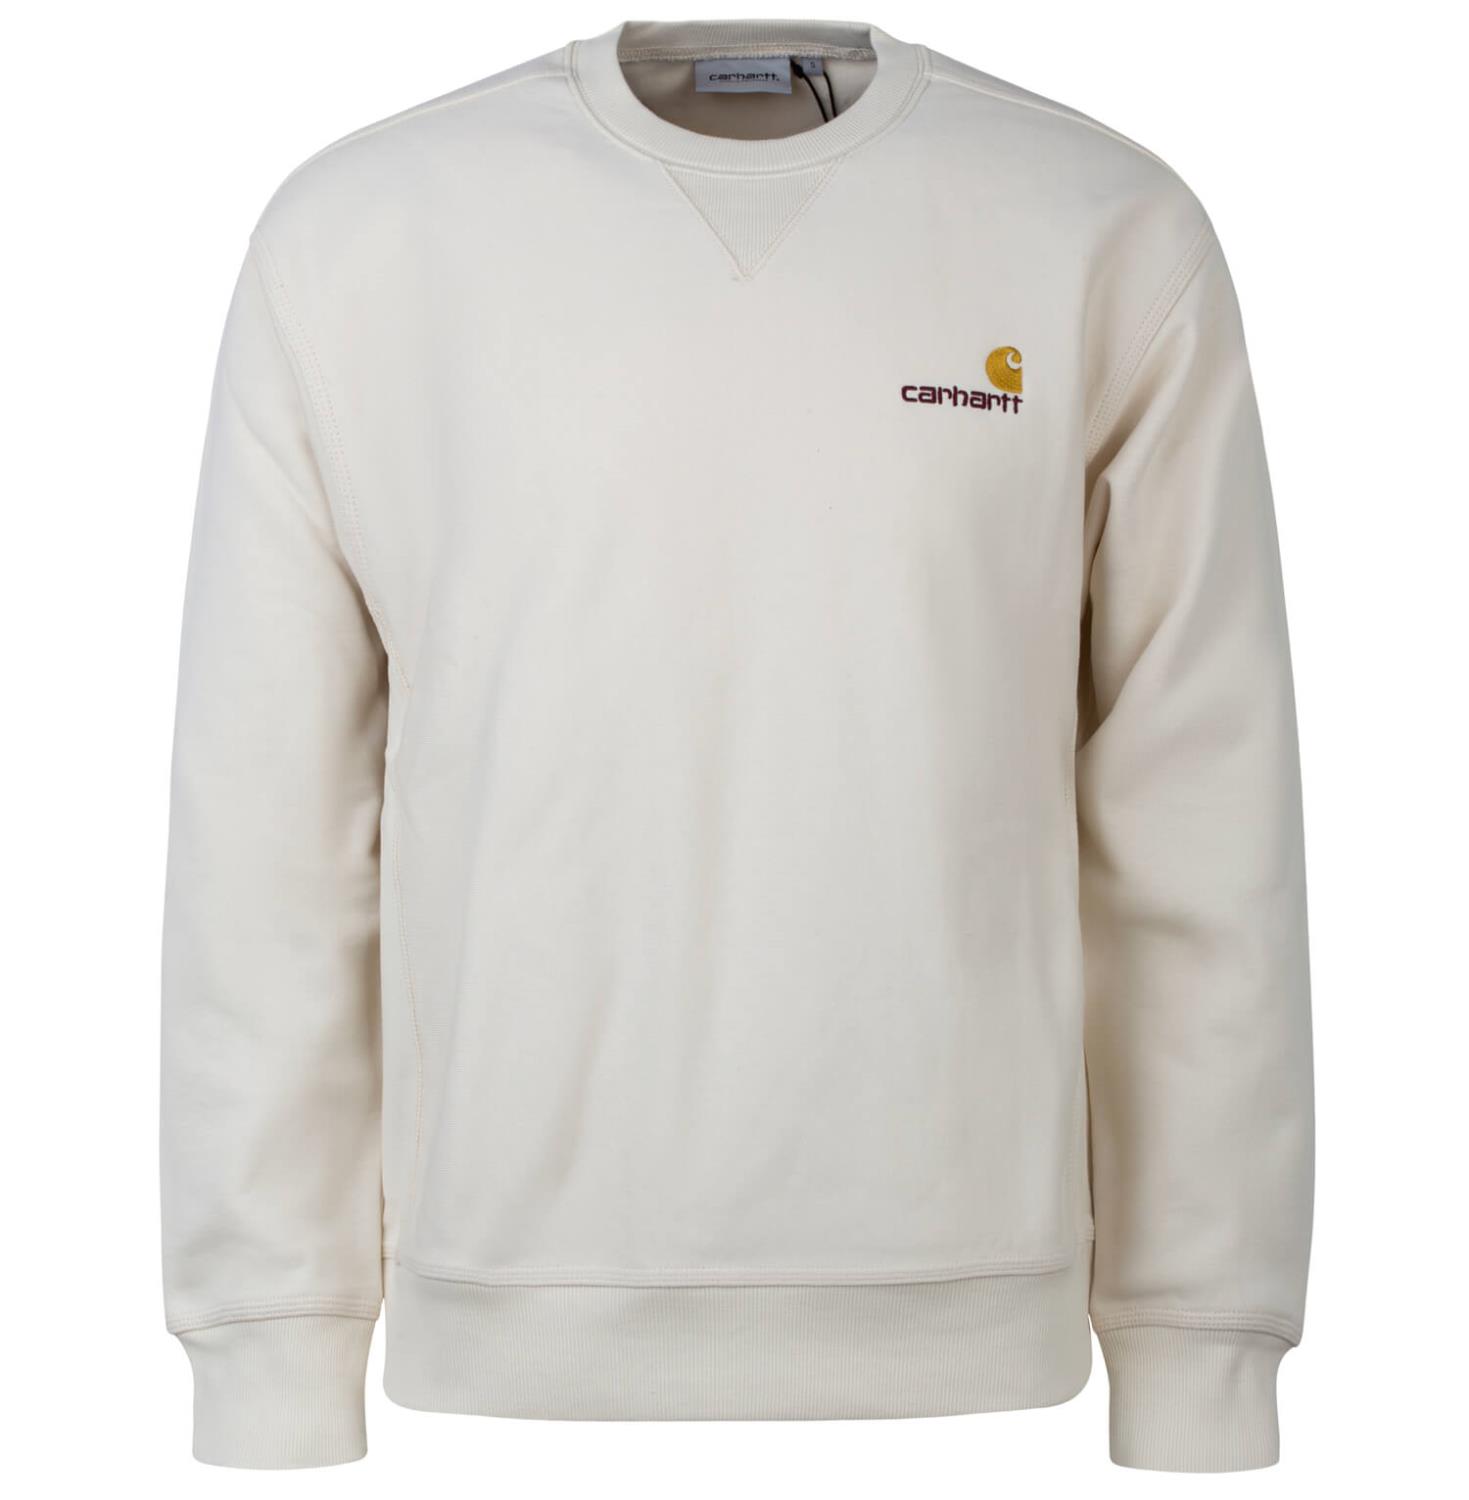 Carhartt WIP American Script Sweatshirt natural beige - Loose Fit